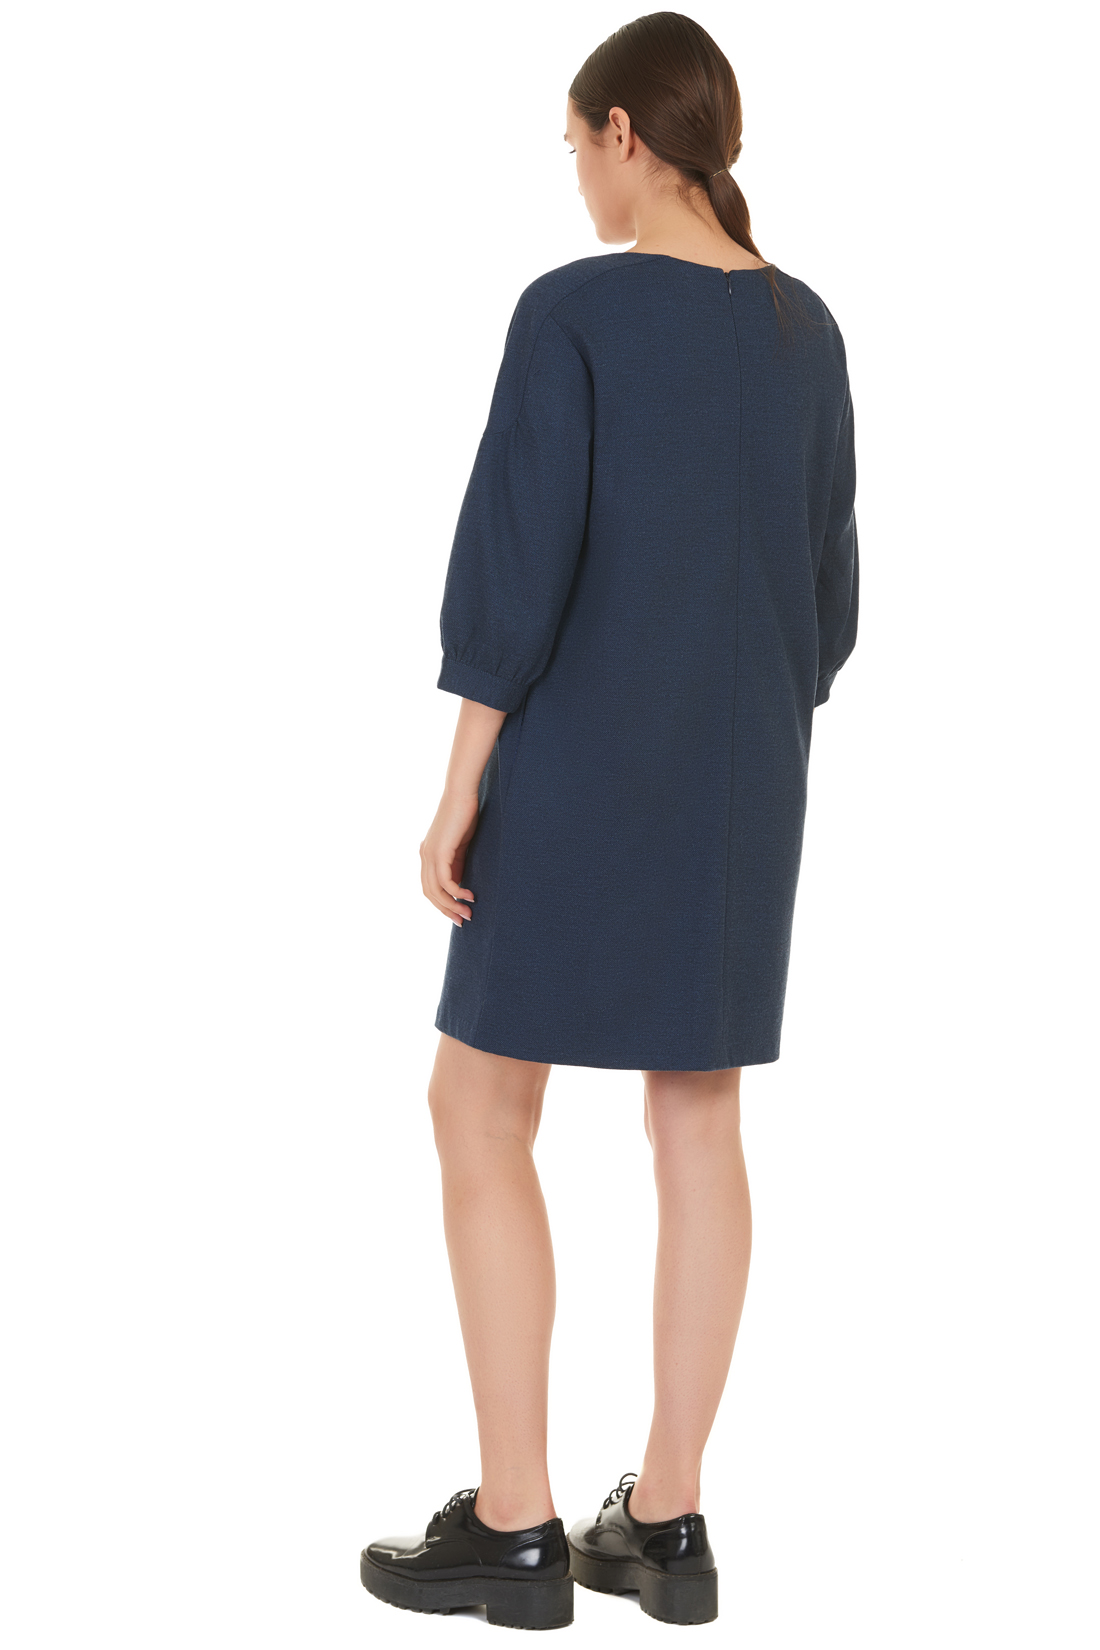 Платье с оригинальными рукавами (арт. baon B457519), размер XXL, цвет blue night melange#синий Платье с оригинальными рукавами (арт. baon B457519) - фото 2